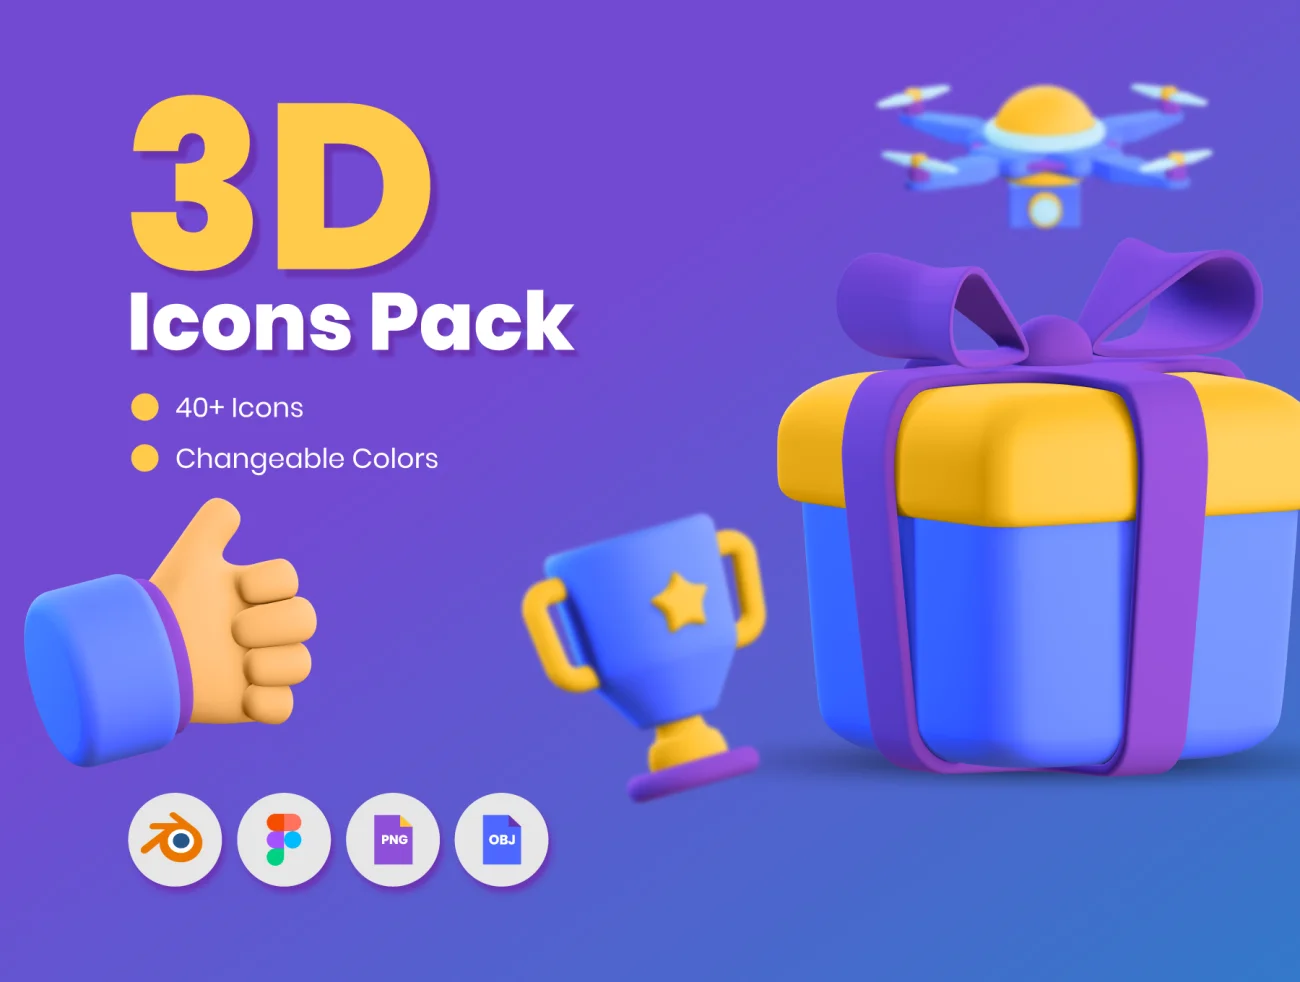 50款常用立体3D图标合集 50 3D Icons Pack插图1